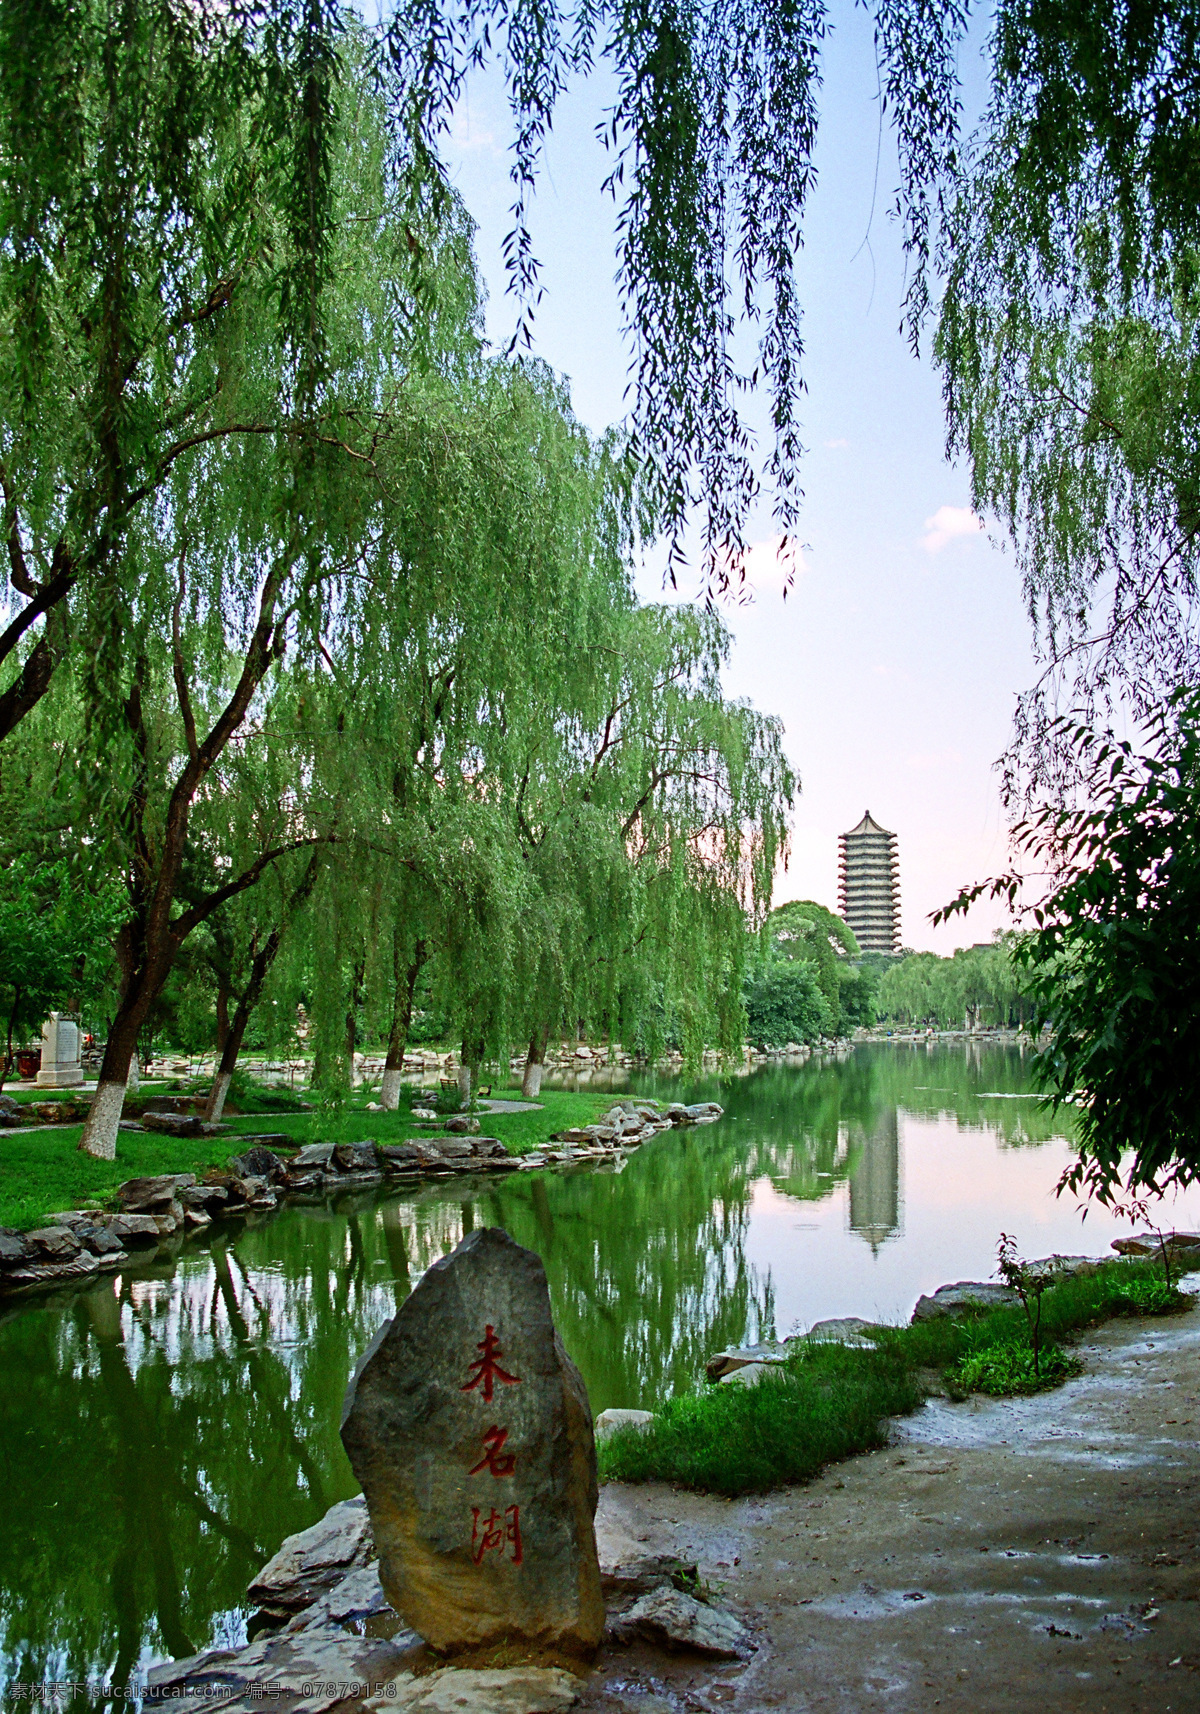 唯美 风景 风光 旅行 人文 北京 北京大学 北大 百年名校 高等学府 高校 大学 旅游摄影 国内旅游